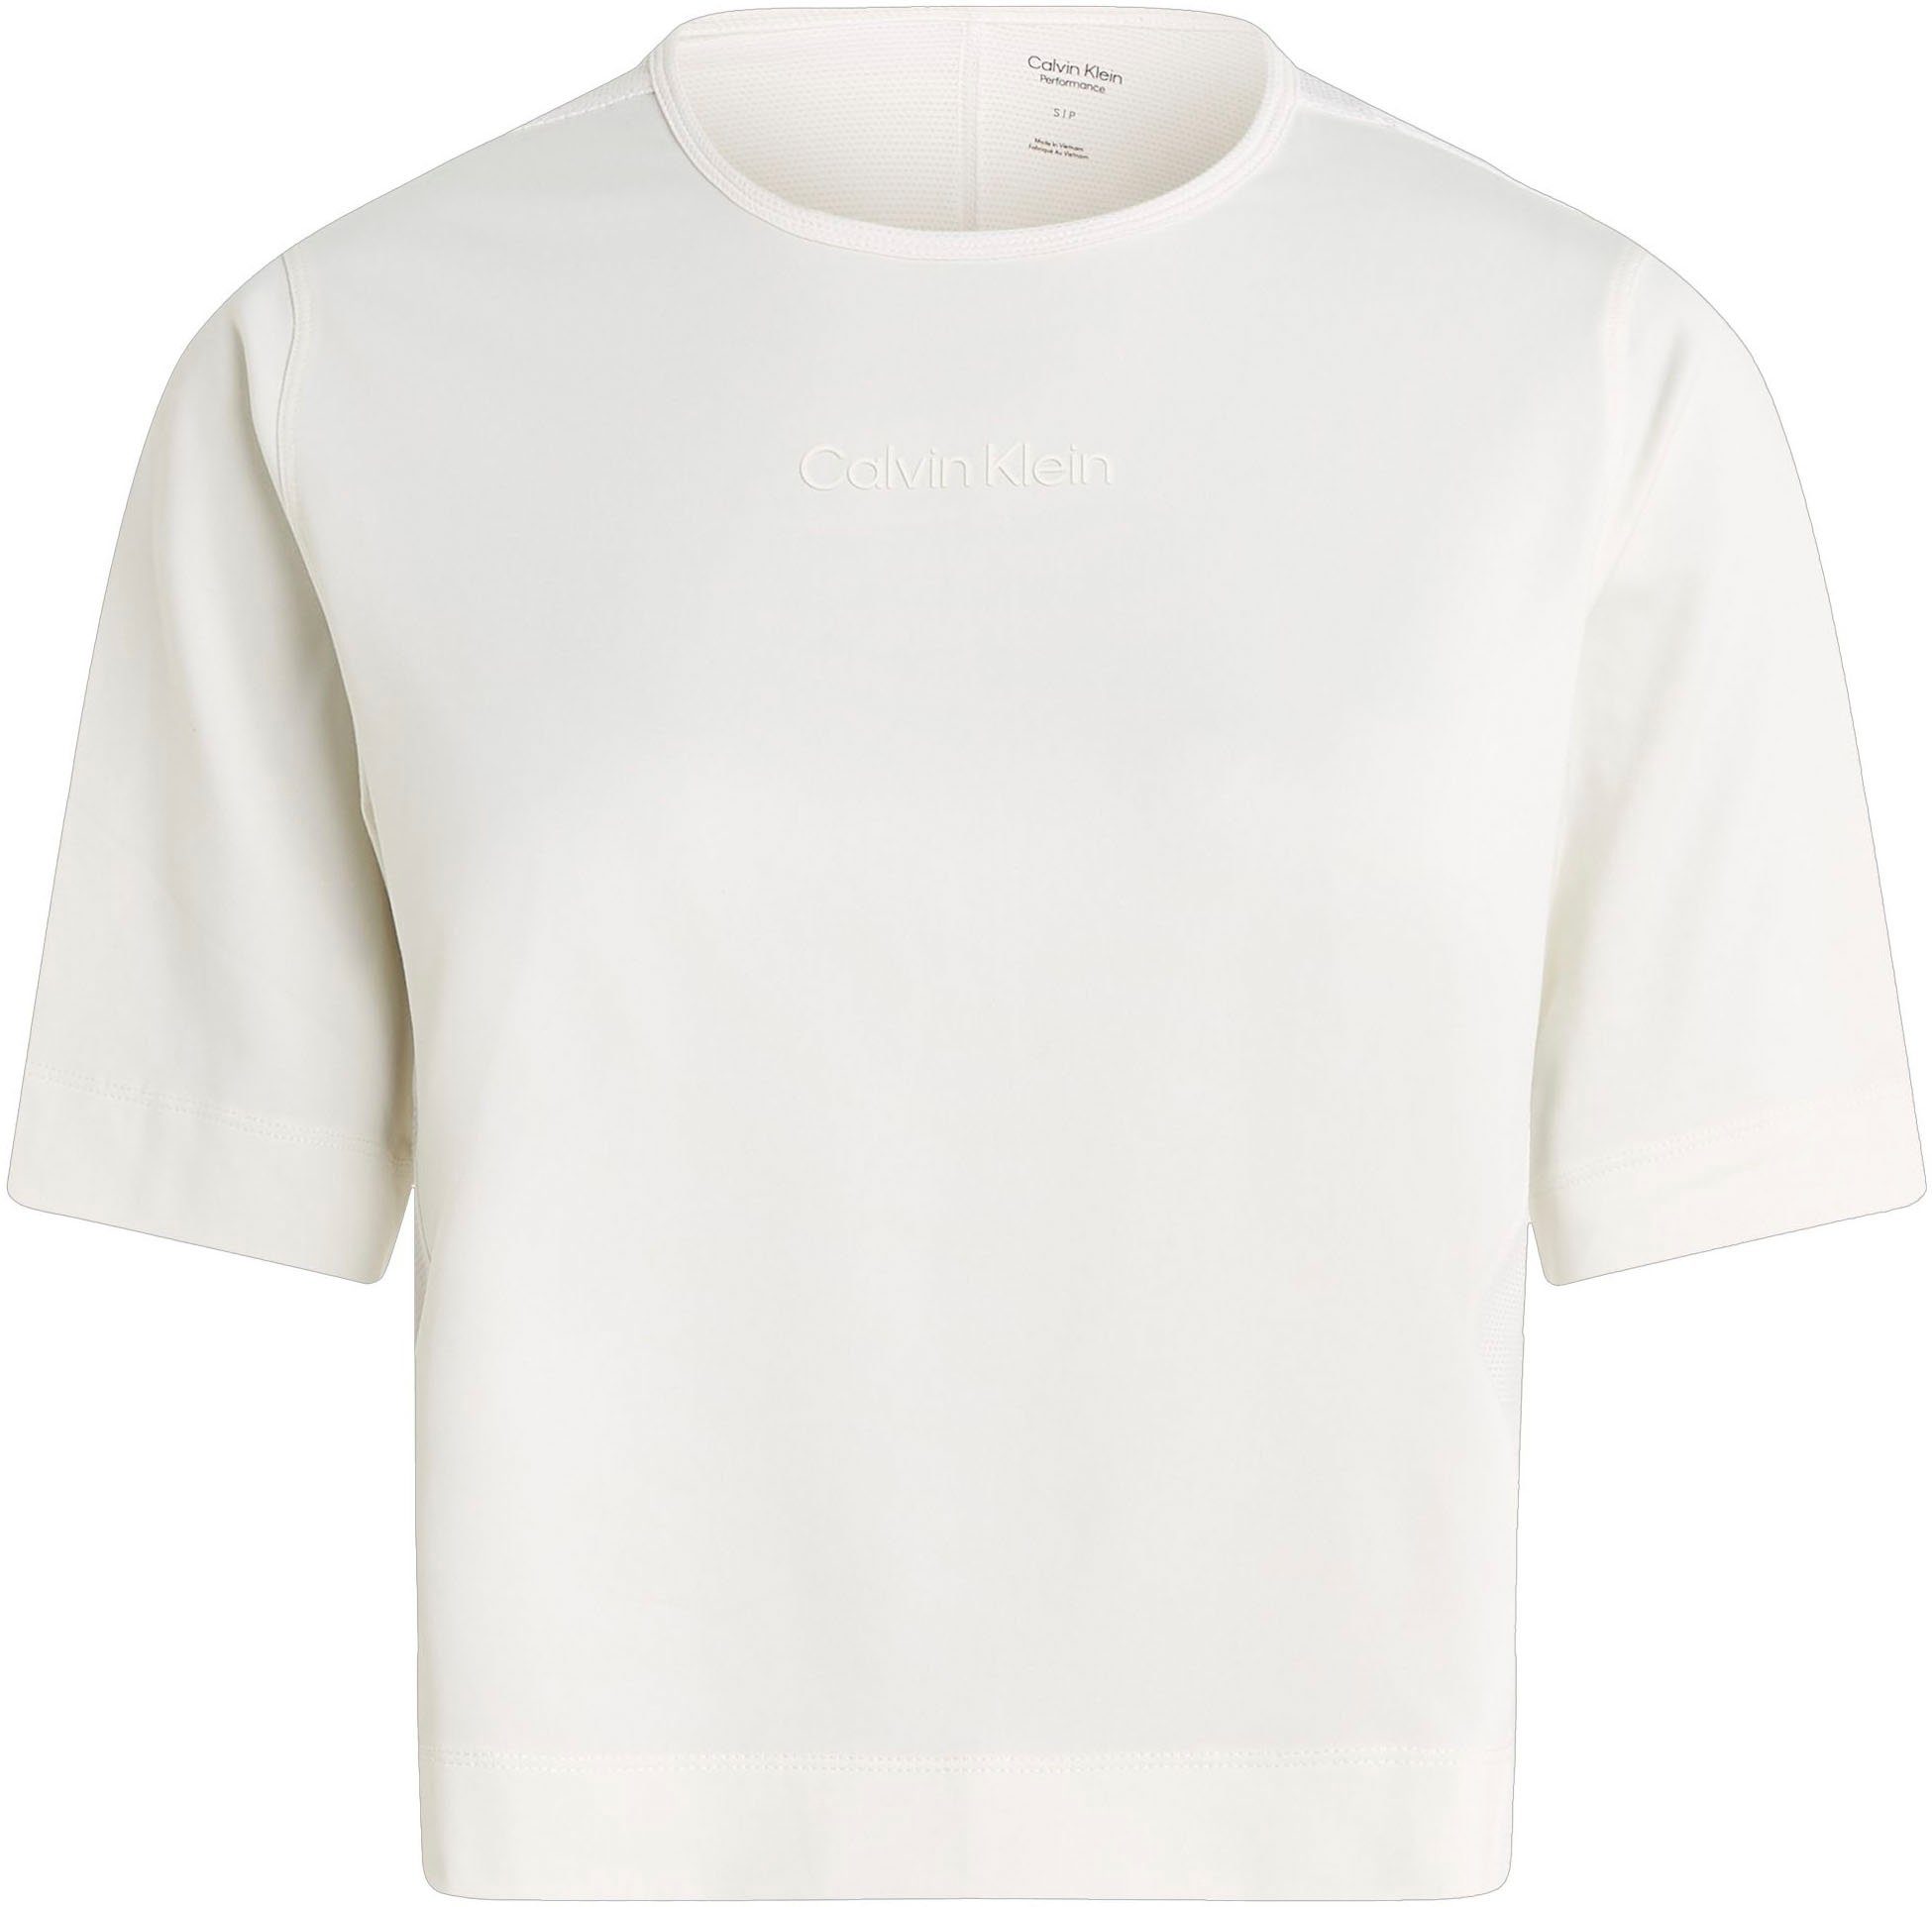 T-Shirt White Klein Suede Calvin Sport